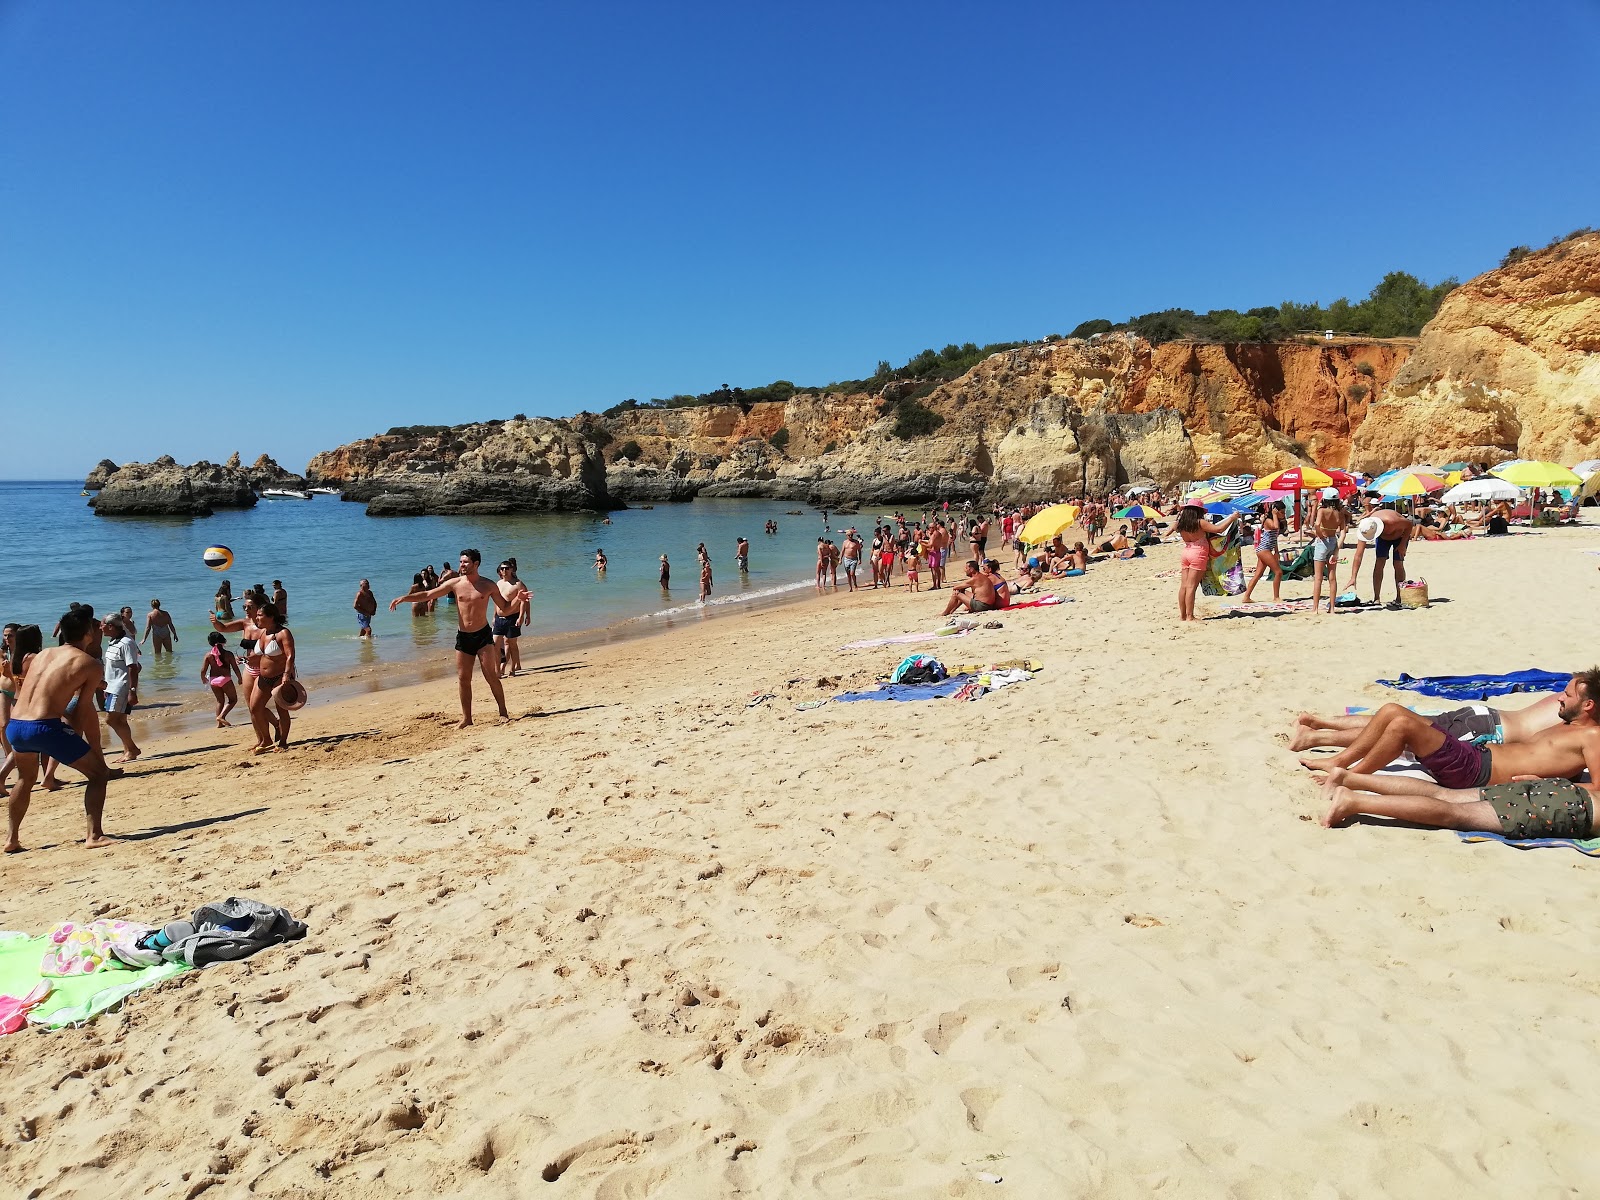 Fotografie cu Praia do Alemao - locul popular printre cunoscătorii de relaxare